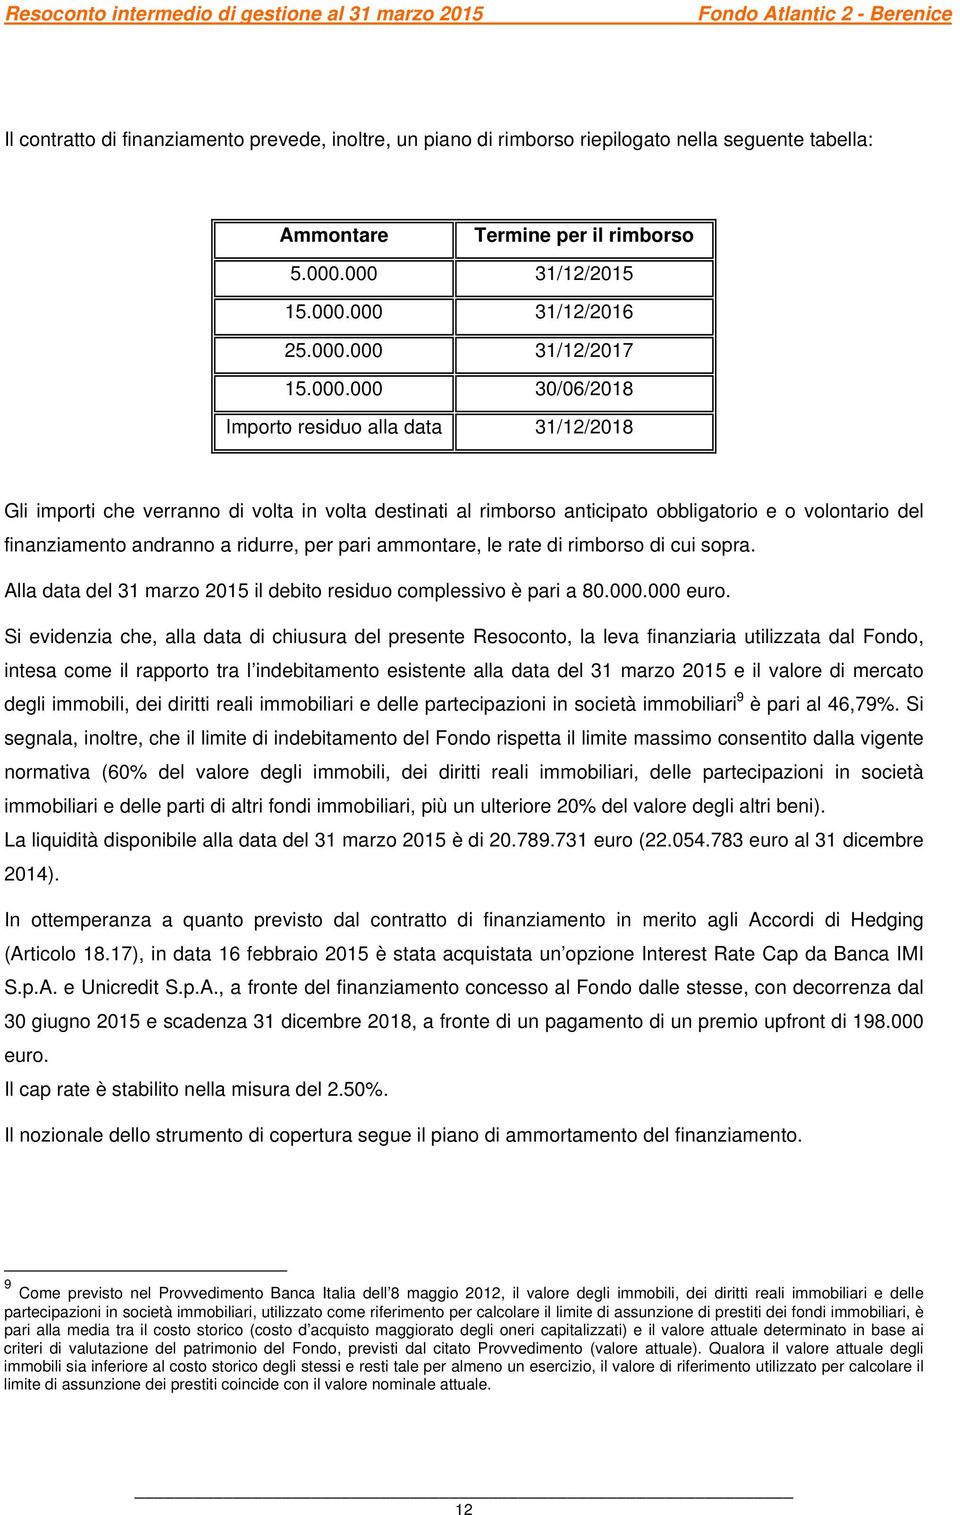 per pari ammontare, le rate di rimborso di cui sopra. Alla data del 31 marzo 2015 il debito residuo complessivo è pari a 80.000.000 euro.